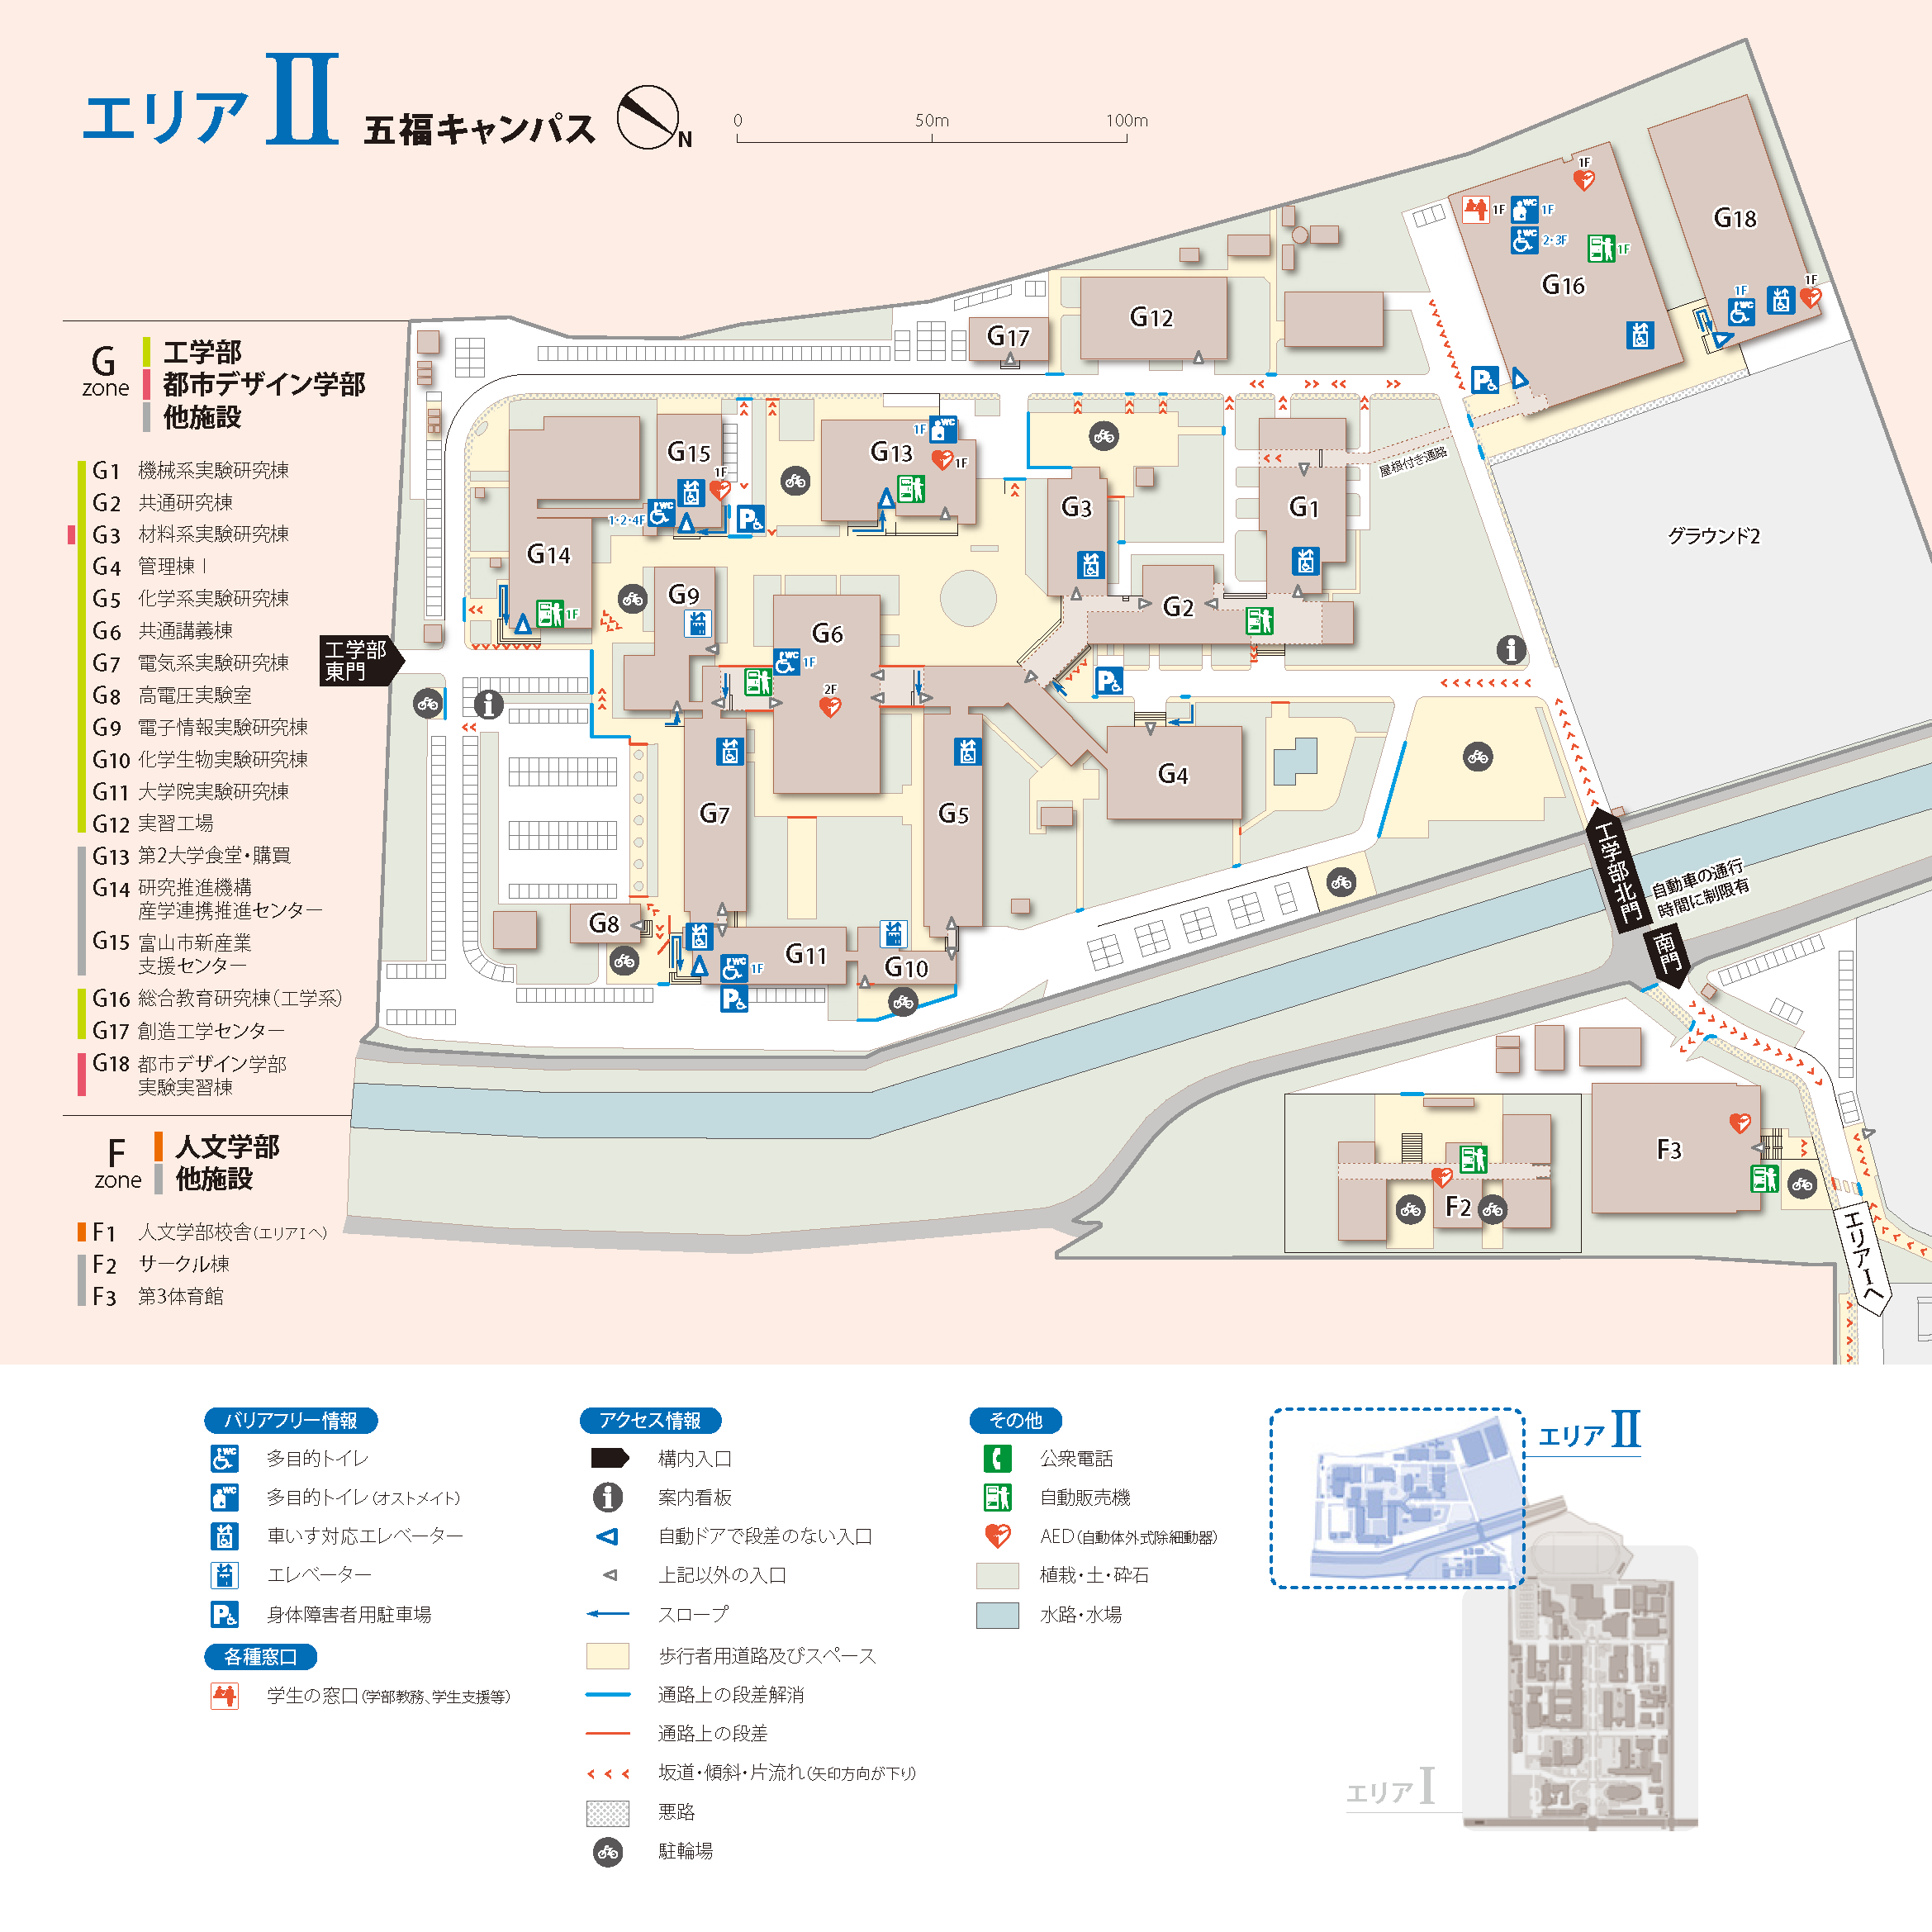 五福キャンパス工学部 アクセシビリティ・マップ